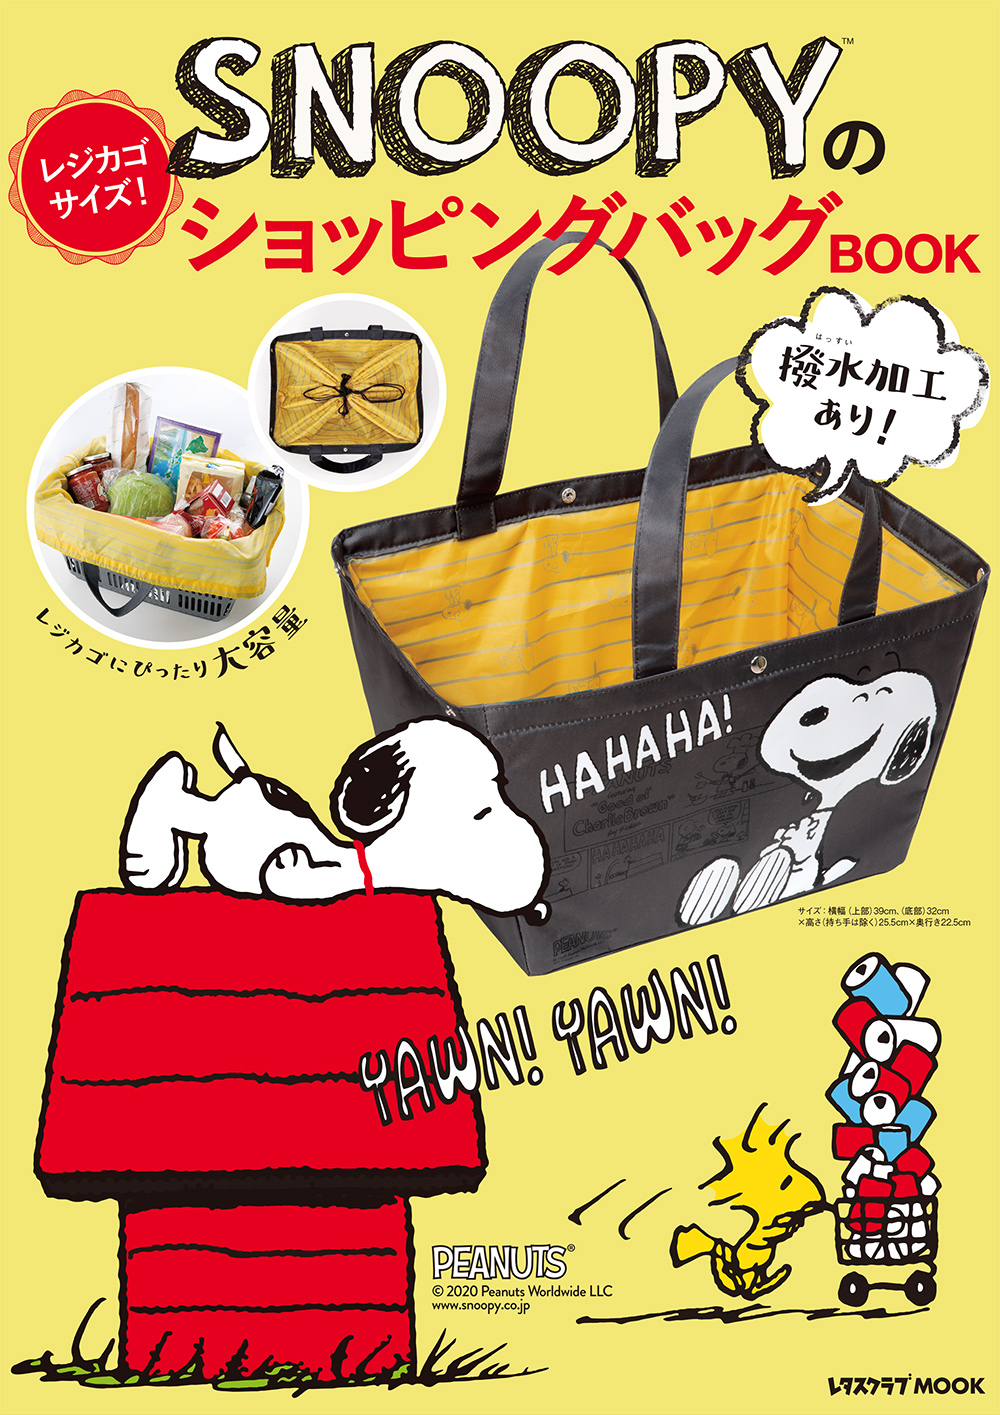 スーパーの買い物の時短に最適 Snoopyのレジカゴサイズ ショッピングバッグbook が5月11日に発売 株式会社kadokawaのプレスリリース